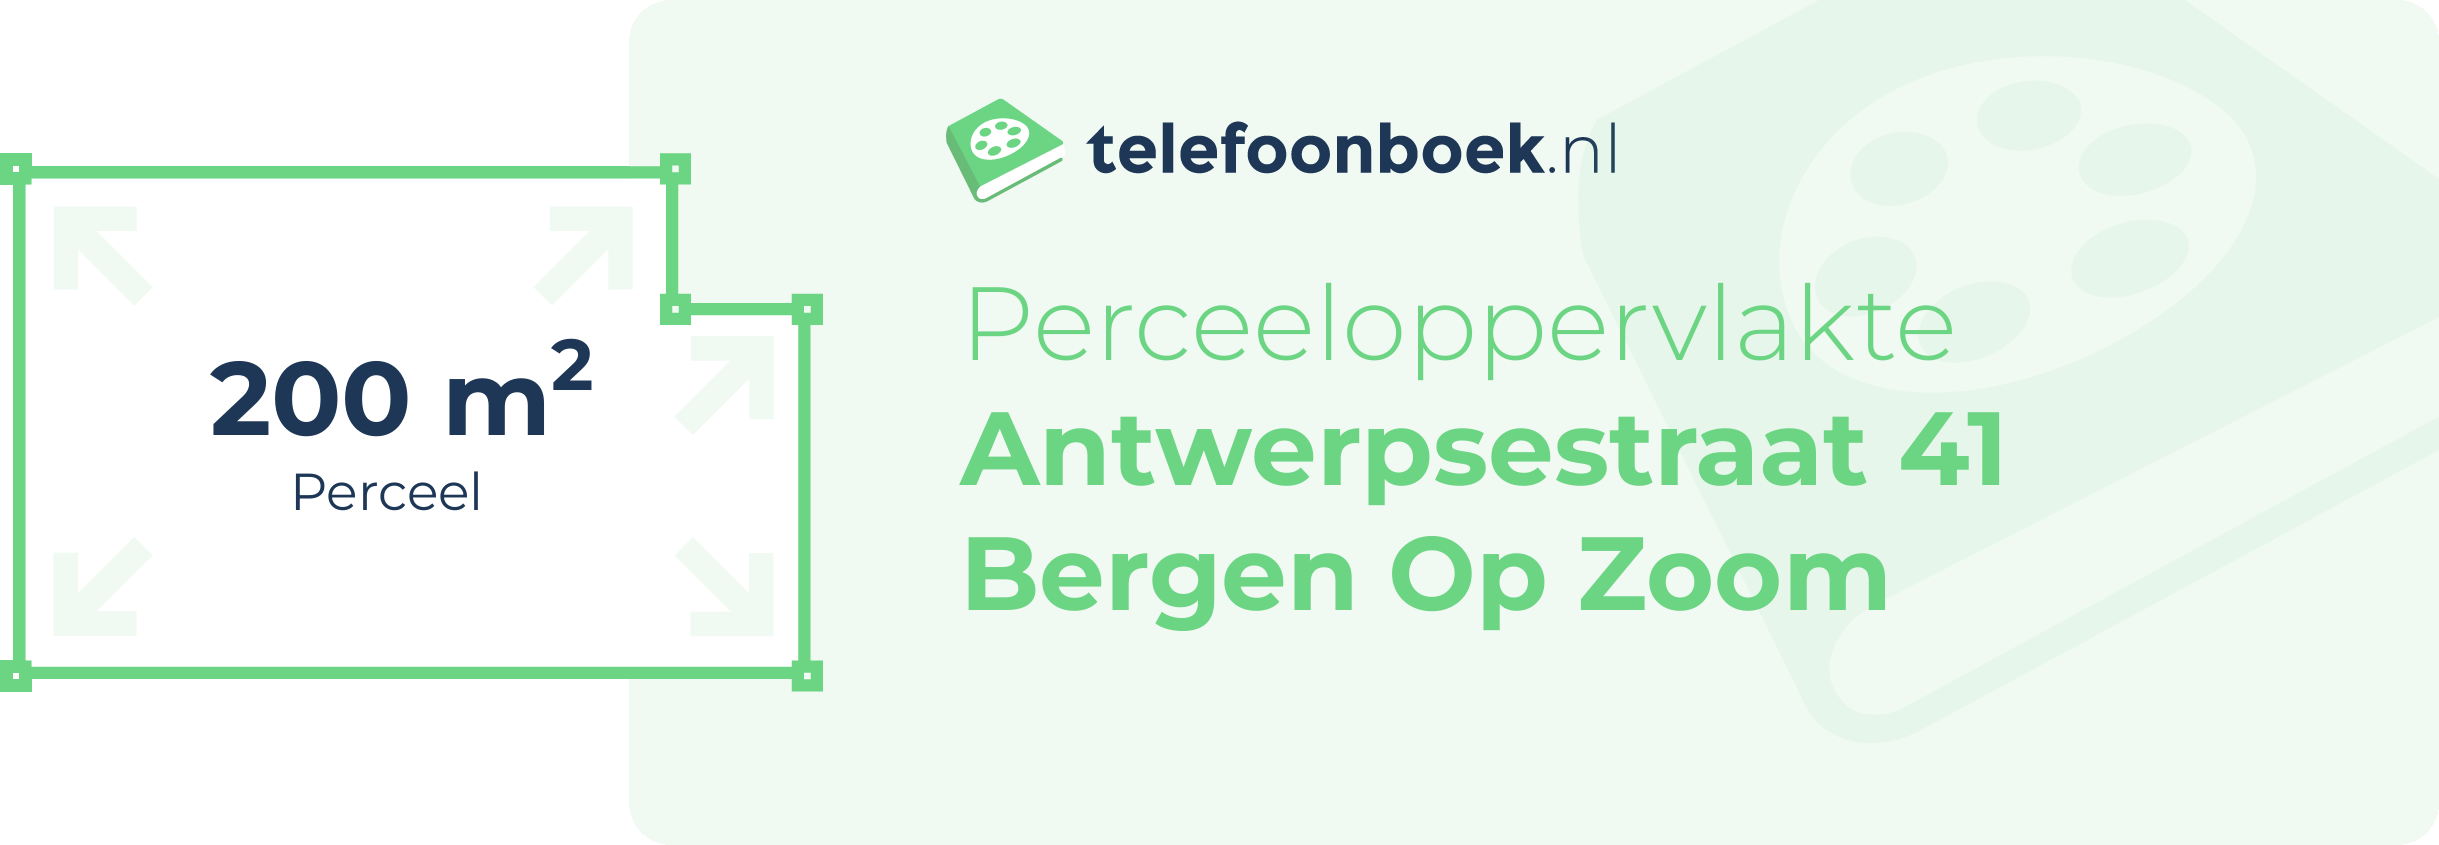 Perceeloppervlakte Antwerpsestraat 41 Bergen Op Zoom